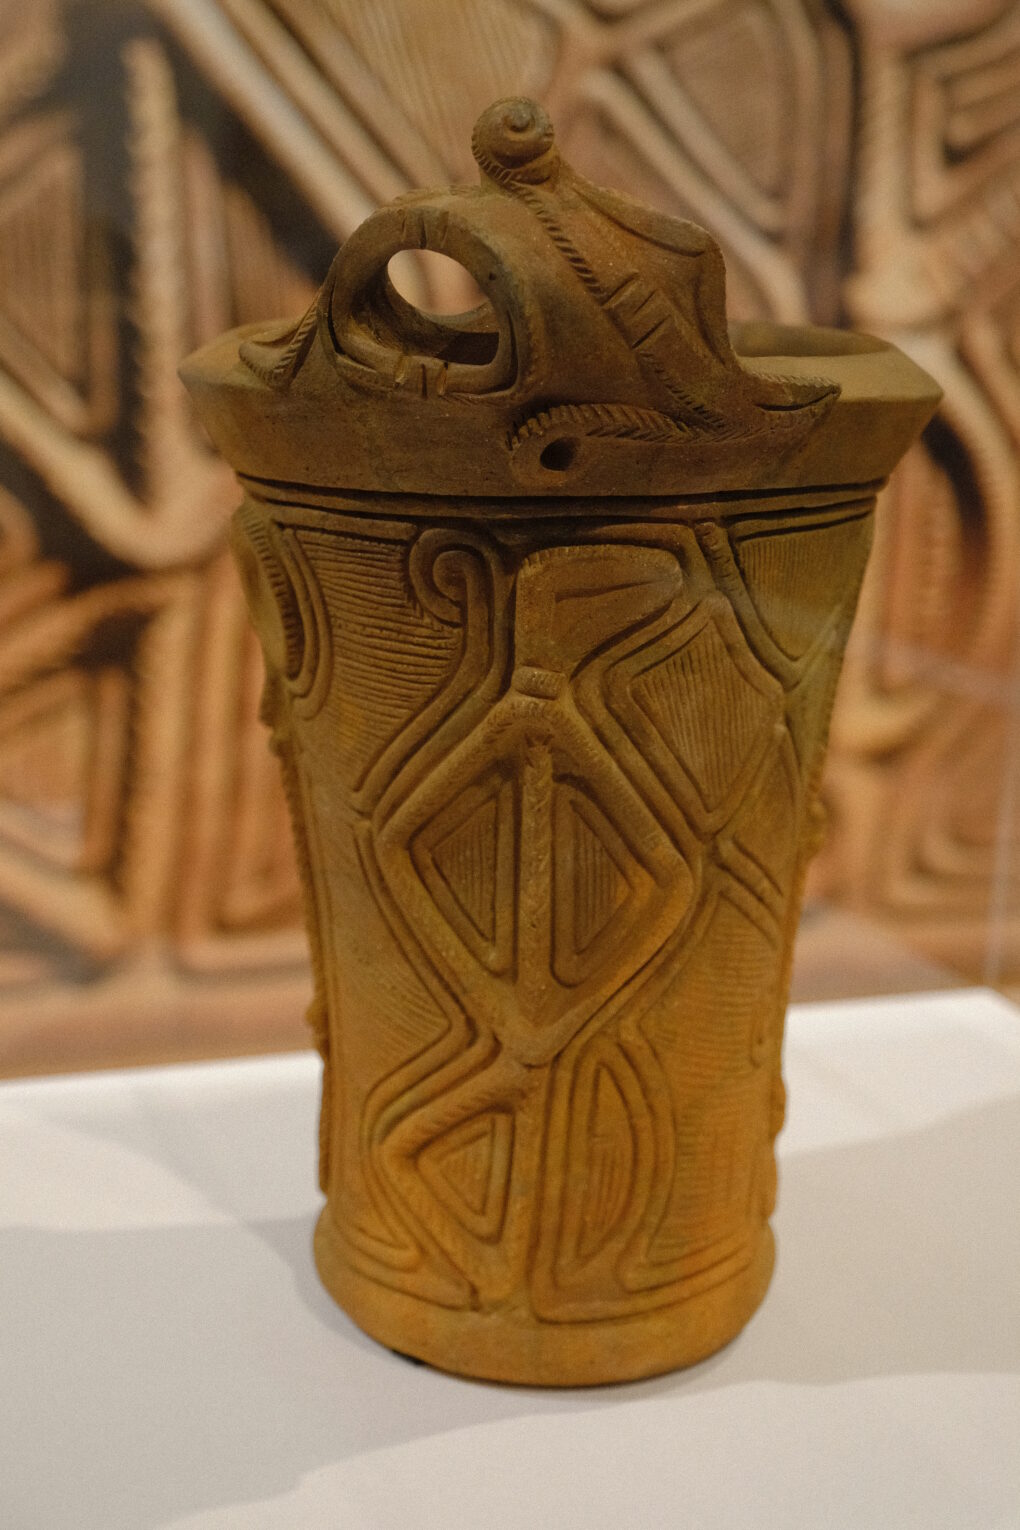 縄文展　深鉢形土器（人体文土器）一の沢遺跡　山梨県立考古博物館